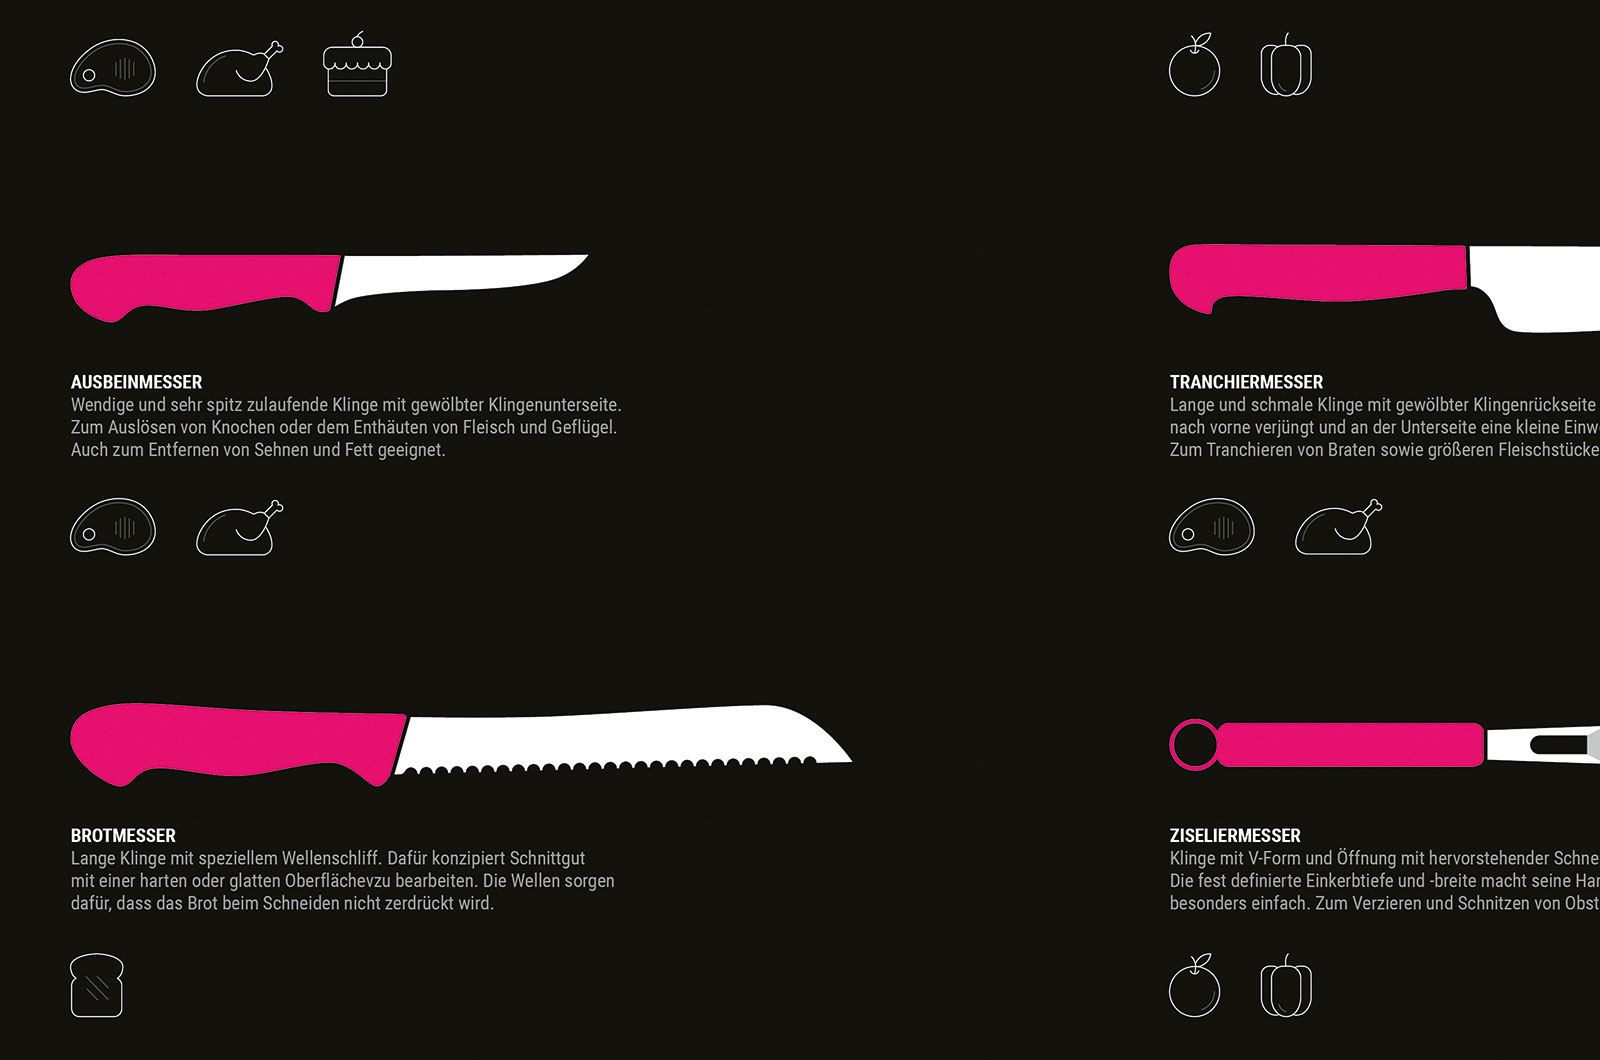 Alexander Glante - Works - Kitchen Knife Guide - 03